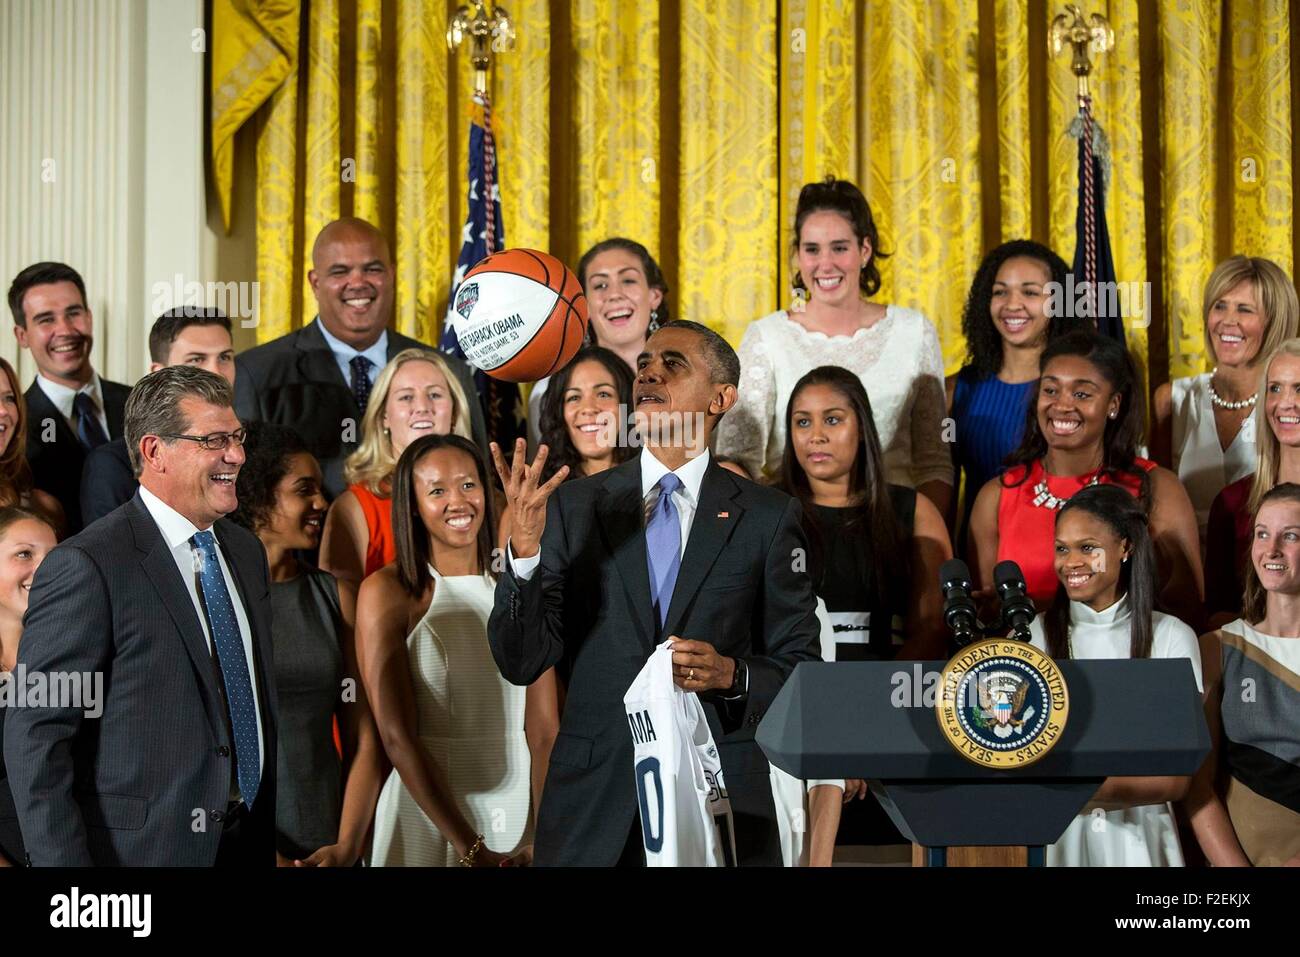 Le président des États-Unis, Barack Obama rencontre les membres de l'Université du Connecticut Huskies gagnants du 2015 Basket-ball championnat dans l'East Room de la Maison Blanche le 15 septembre 2015 à Washington, DC. Banque D'Images